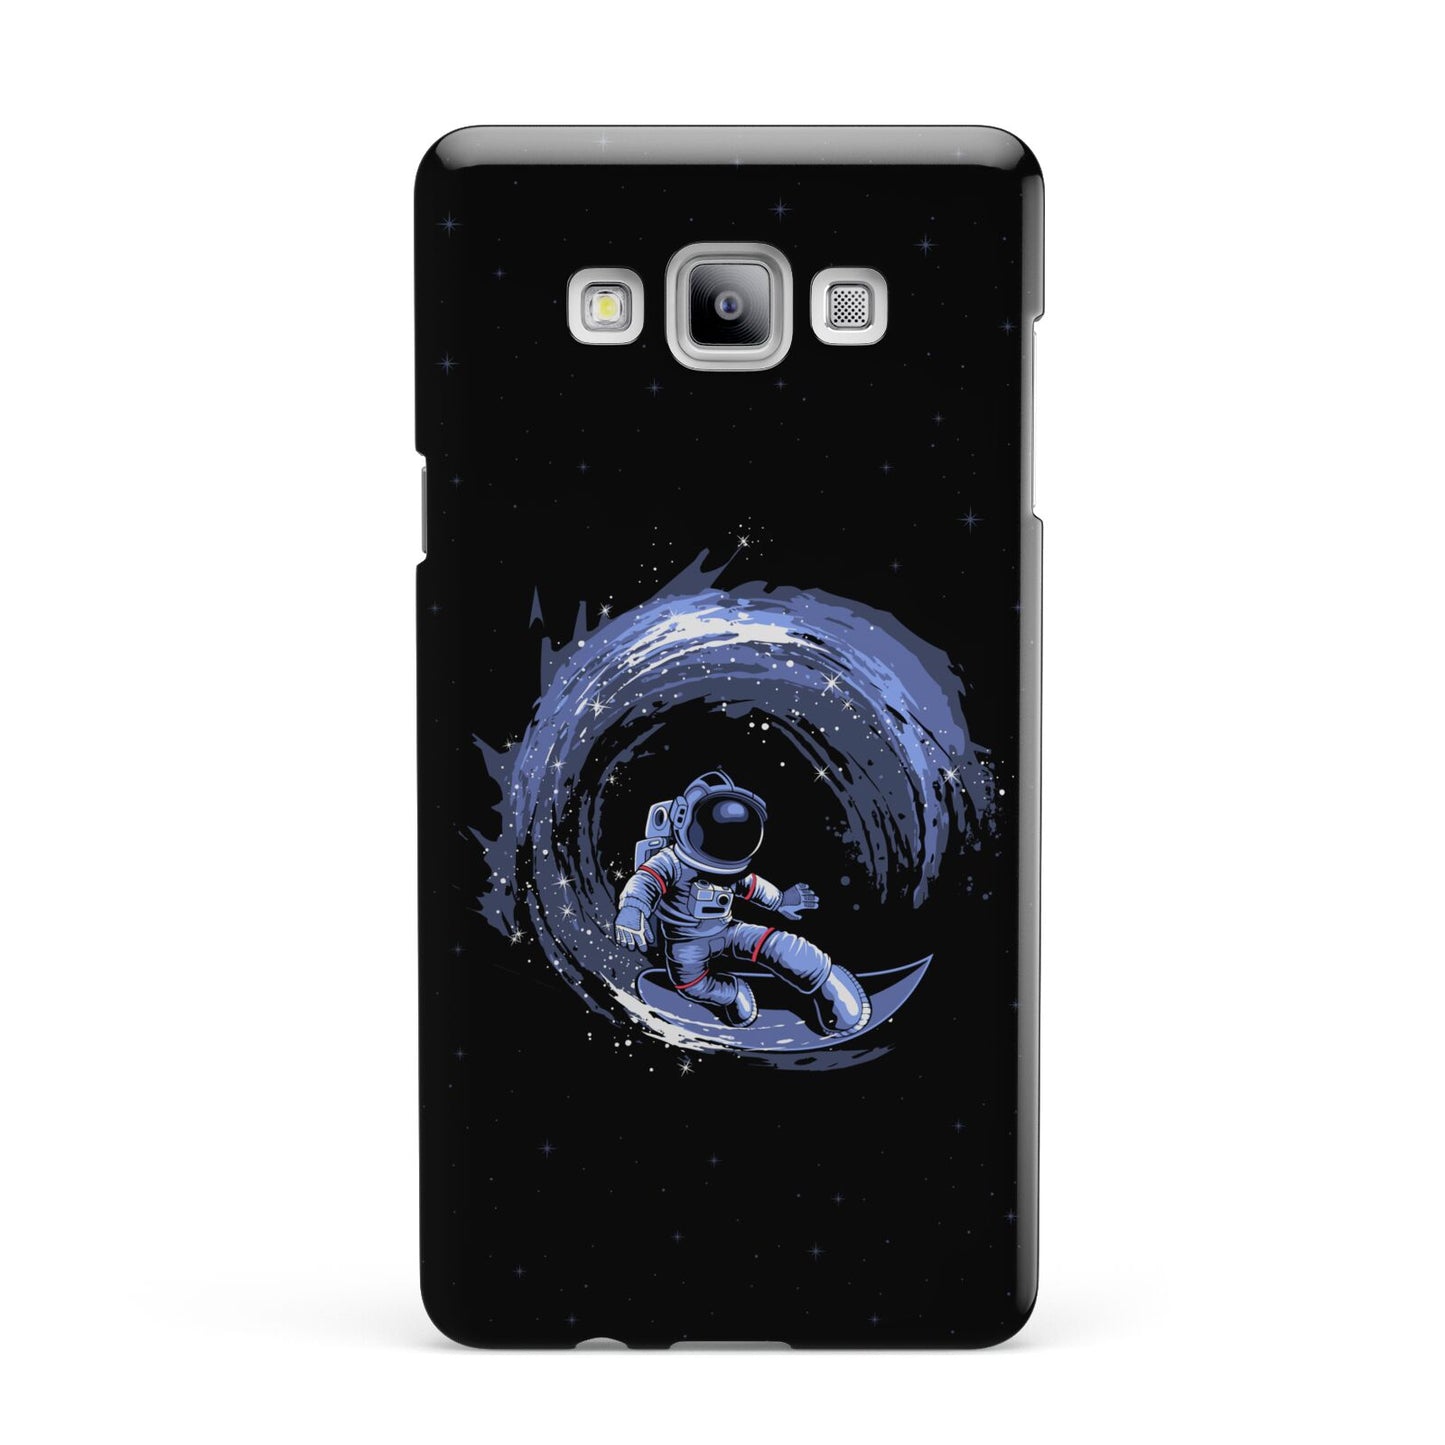 Surfing Astronaut Samsung Galaxy A7 2015 Case